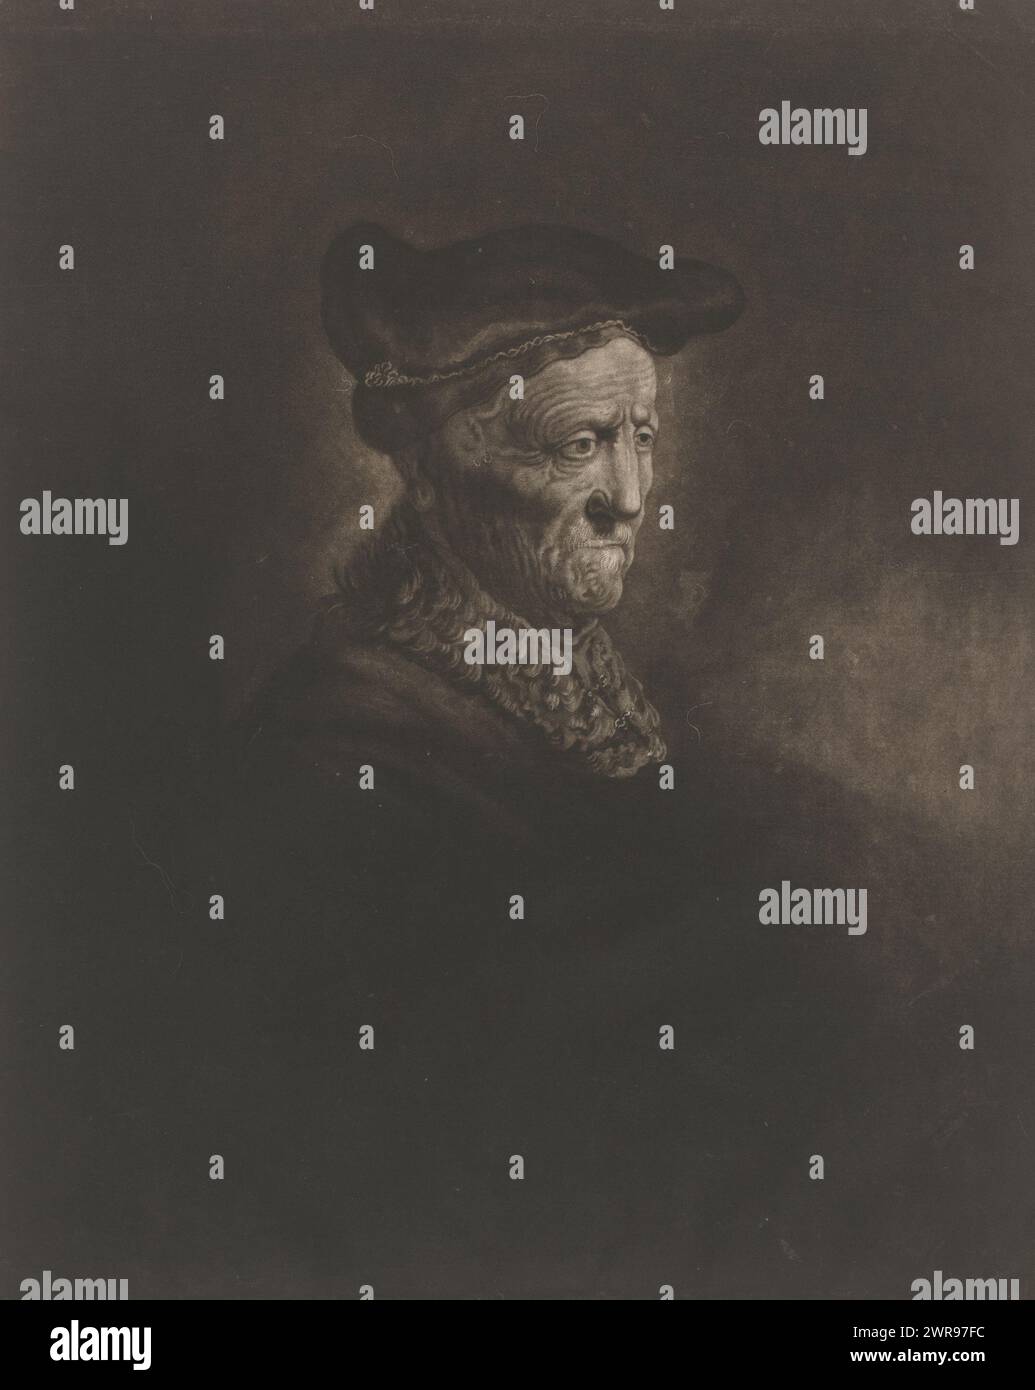 Porträt eines unbekannten Mannes mit Baskenmütze, Druckmacher Charles Phillips, nach Malerei von Atelier Rembrandt, (möglicherweise), nach Malerei von Rembrandt van Rijn, (abgelehnte Zuschreibung), 1769, Papier, Höhe 356 mm x Breite 252 mm, Druck Stockfoto